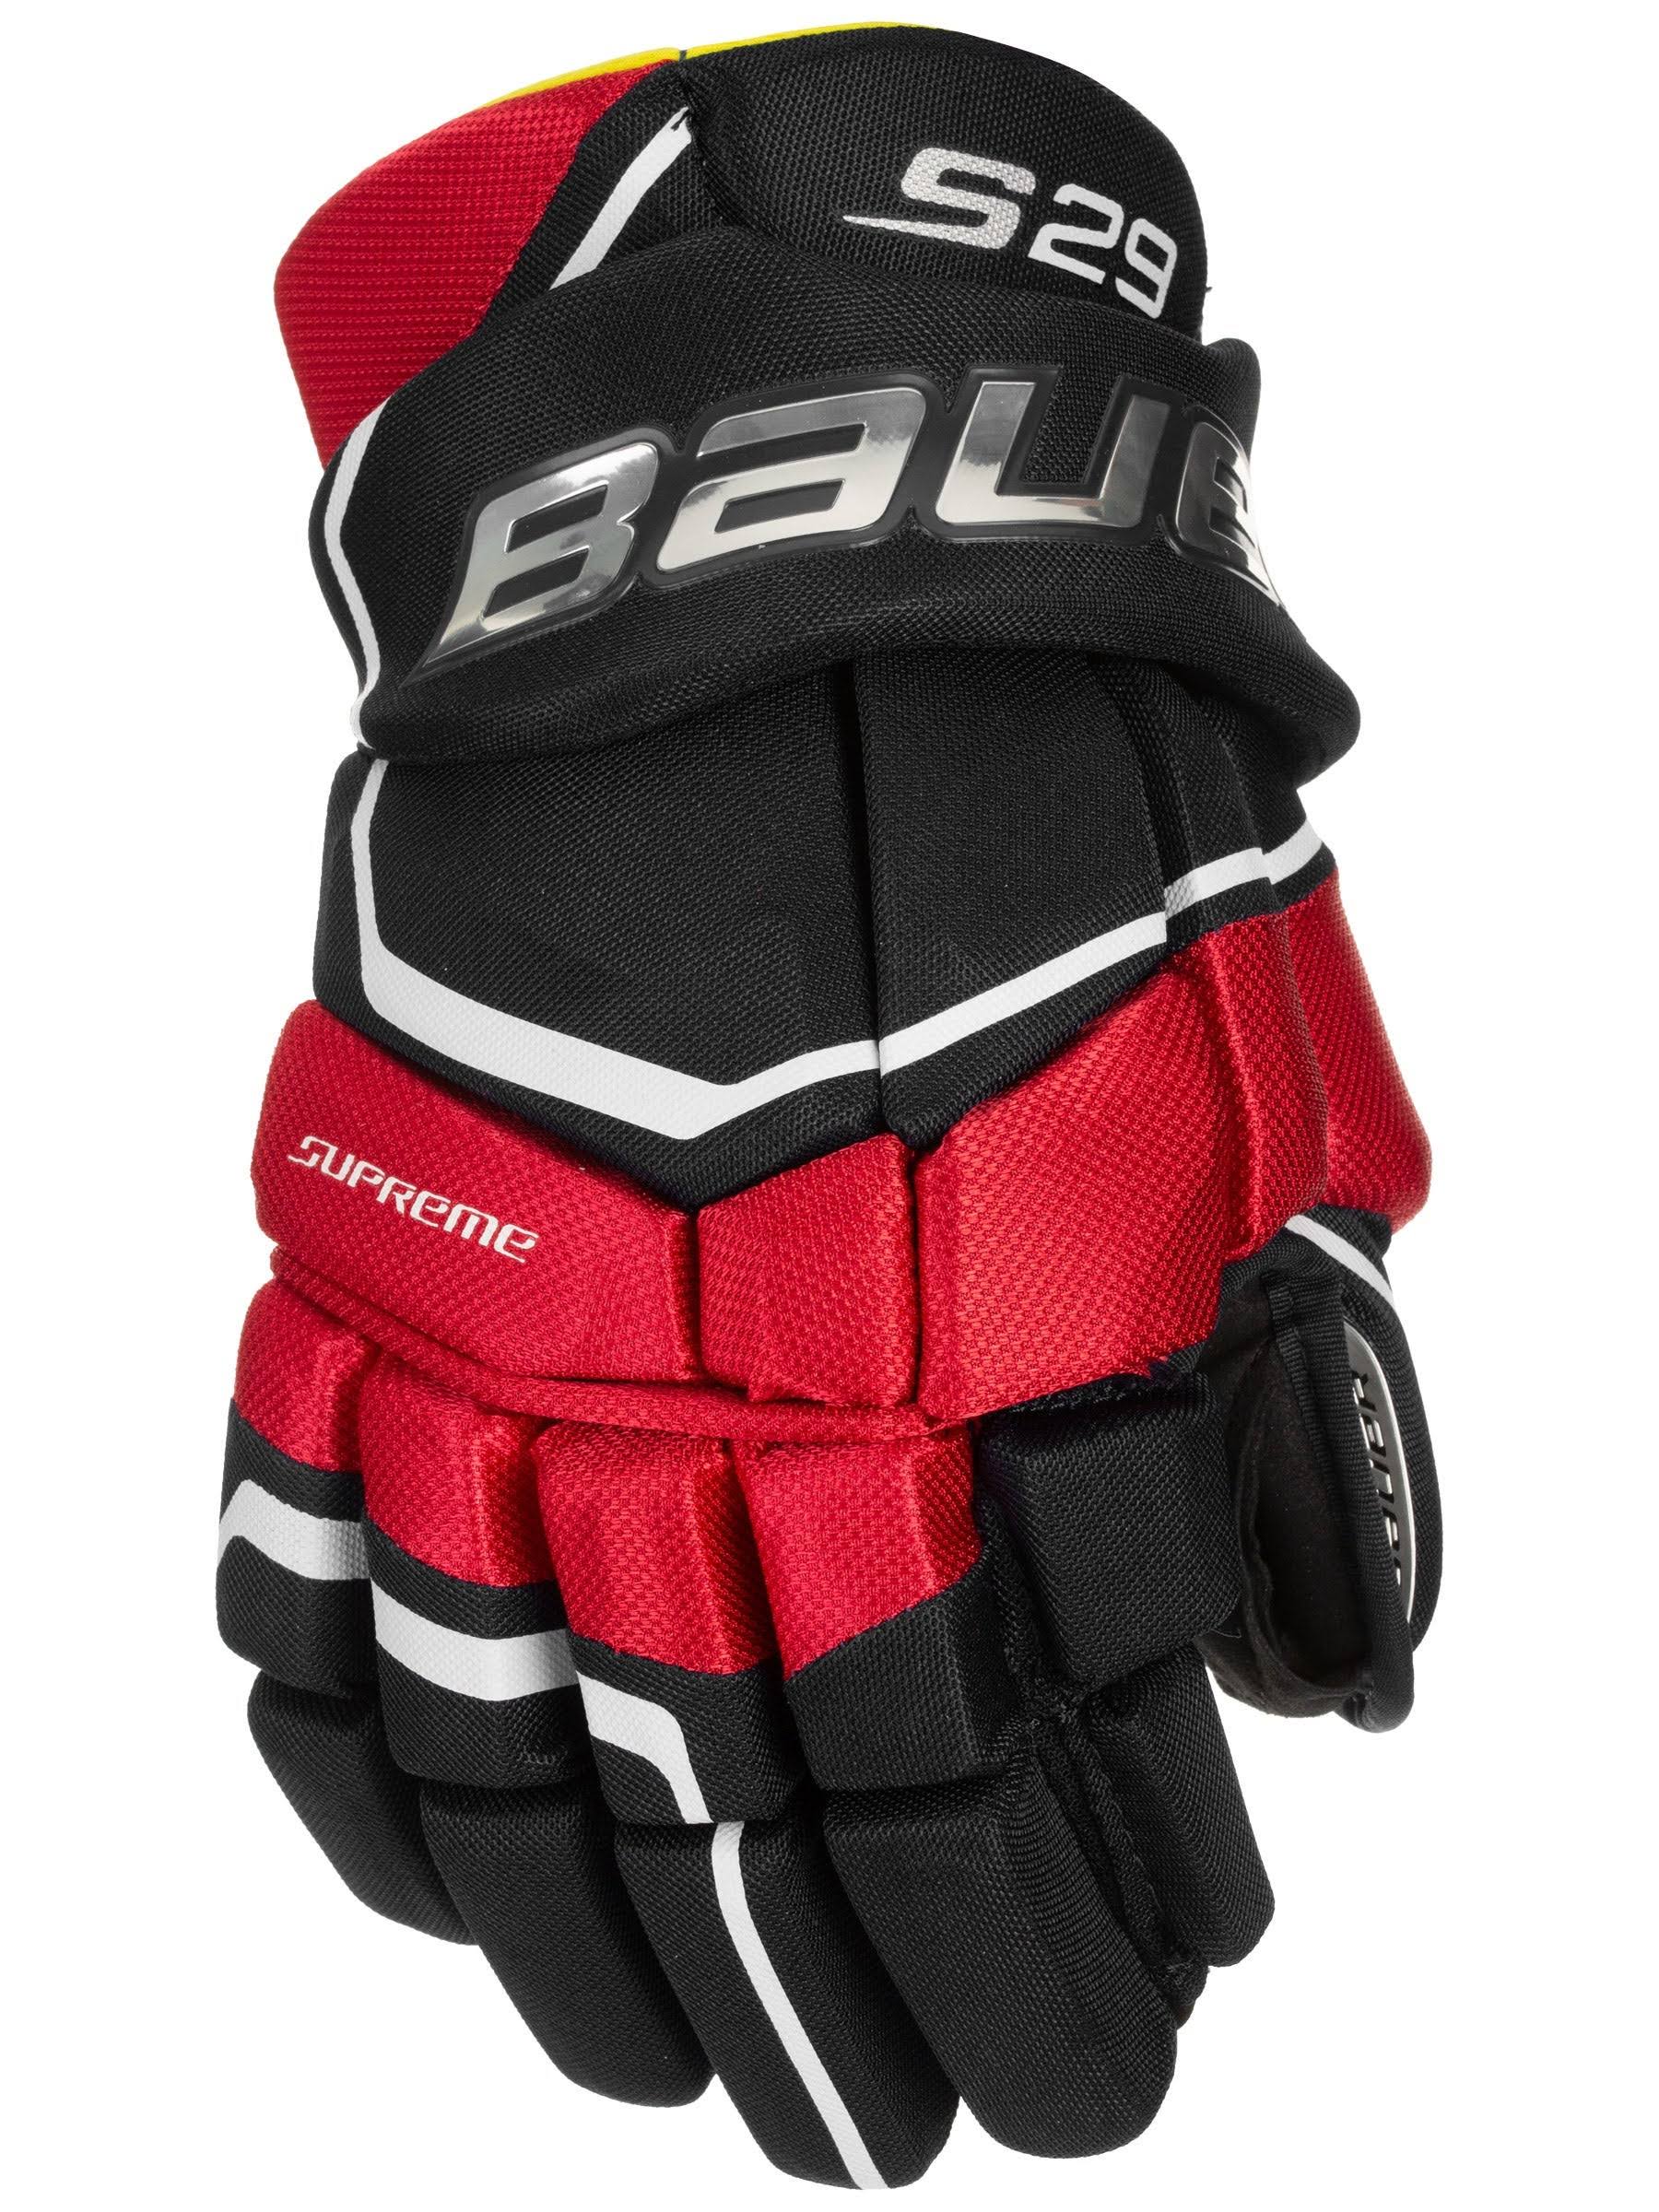 Bauer Supreme S29 Hockey Gloves - Junior - Black/Red - 11.0"